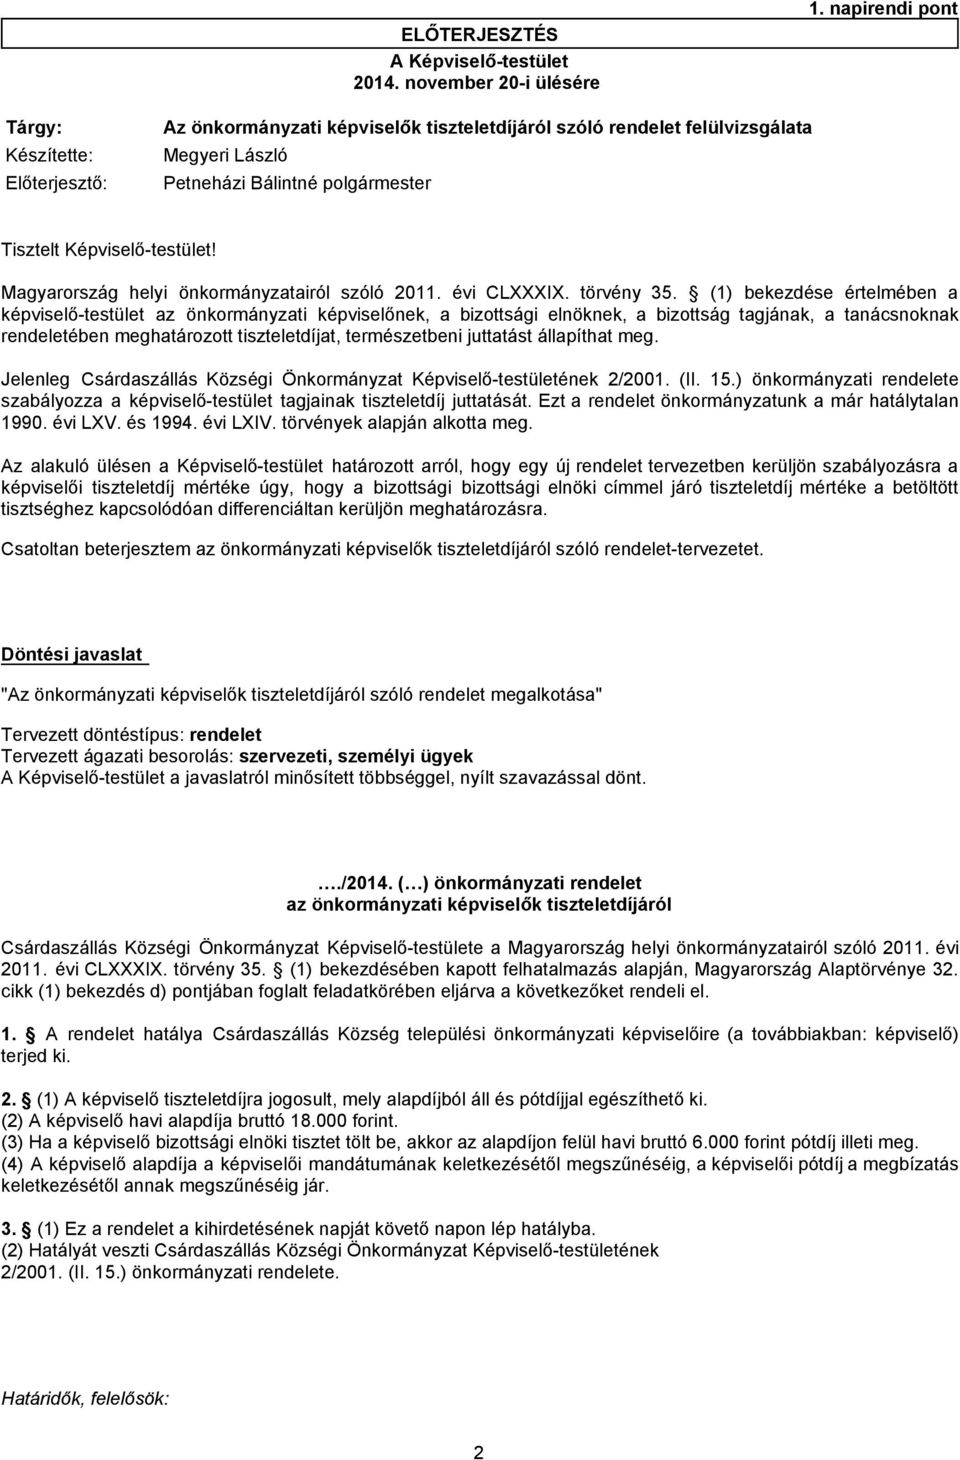 Magyarország helyi önkormányzatairól szóló 2011. évi CLXXXIX. törvény 35.